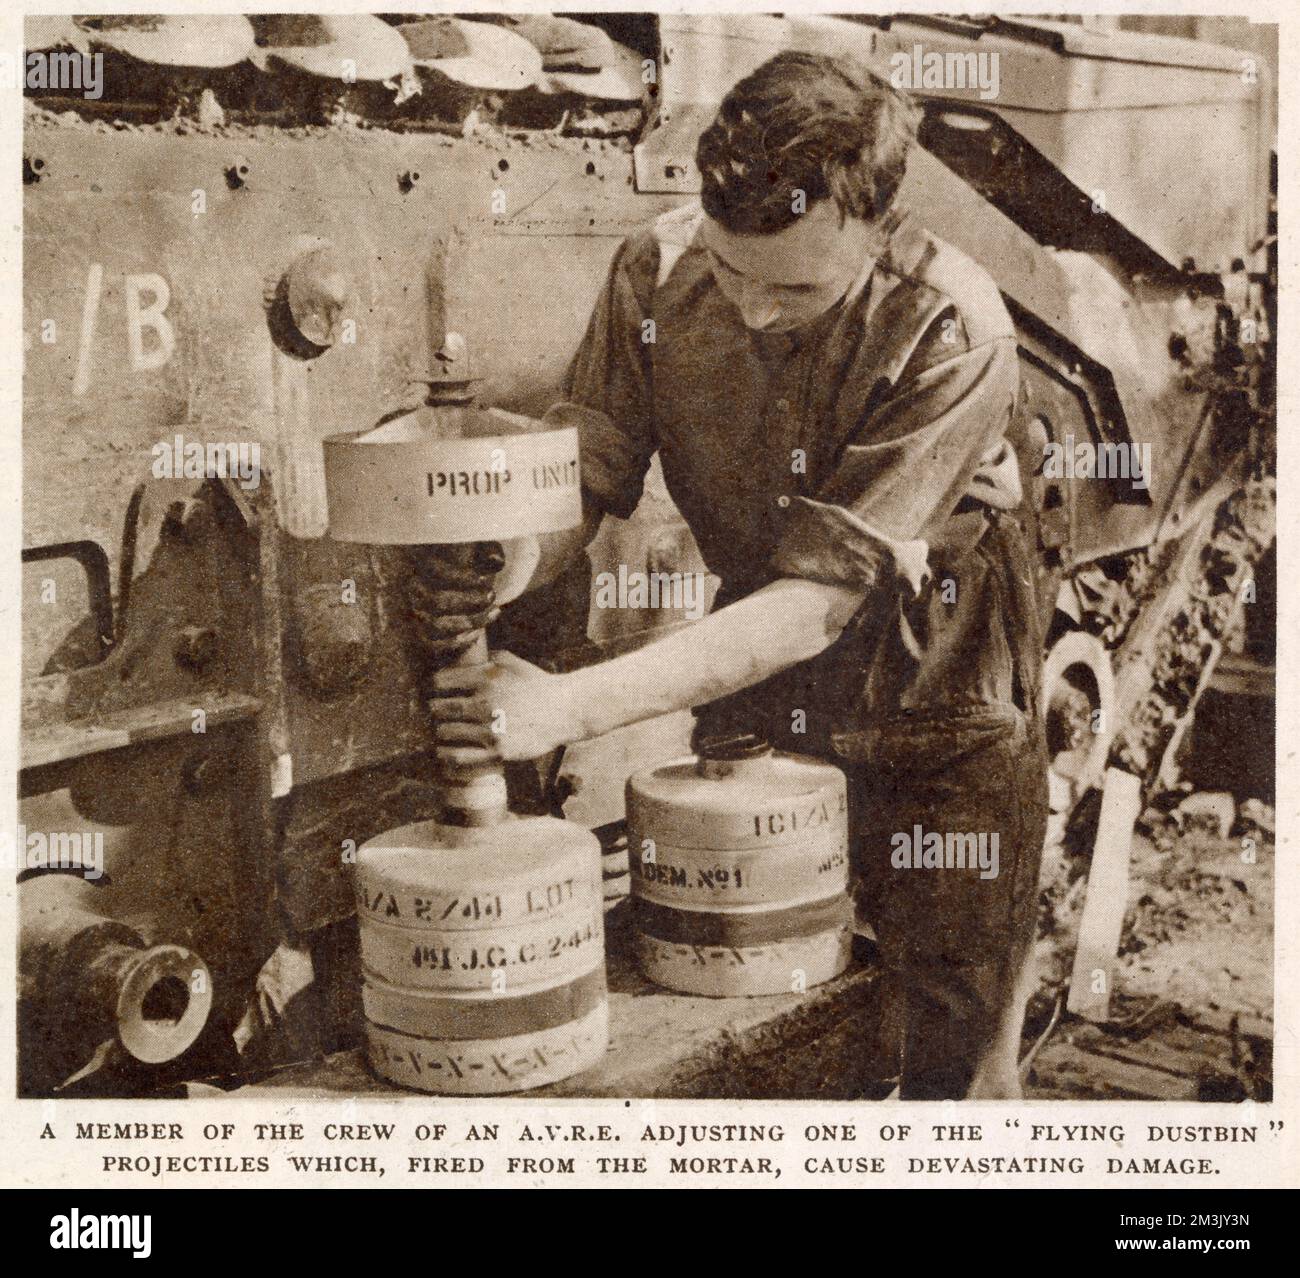 Un contenitore di piccione legato allo stomaco di un paracadutista britannico, 1944. I piccioni sono una delle più antiche e affidabili forme di comunicazione militare e sono stati impiegati dagli inglesi durante varie operazioni nella seconda guerra mondiale. Foto Stock